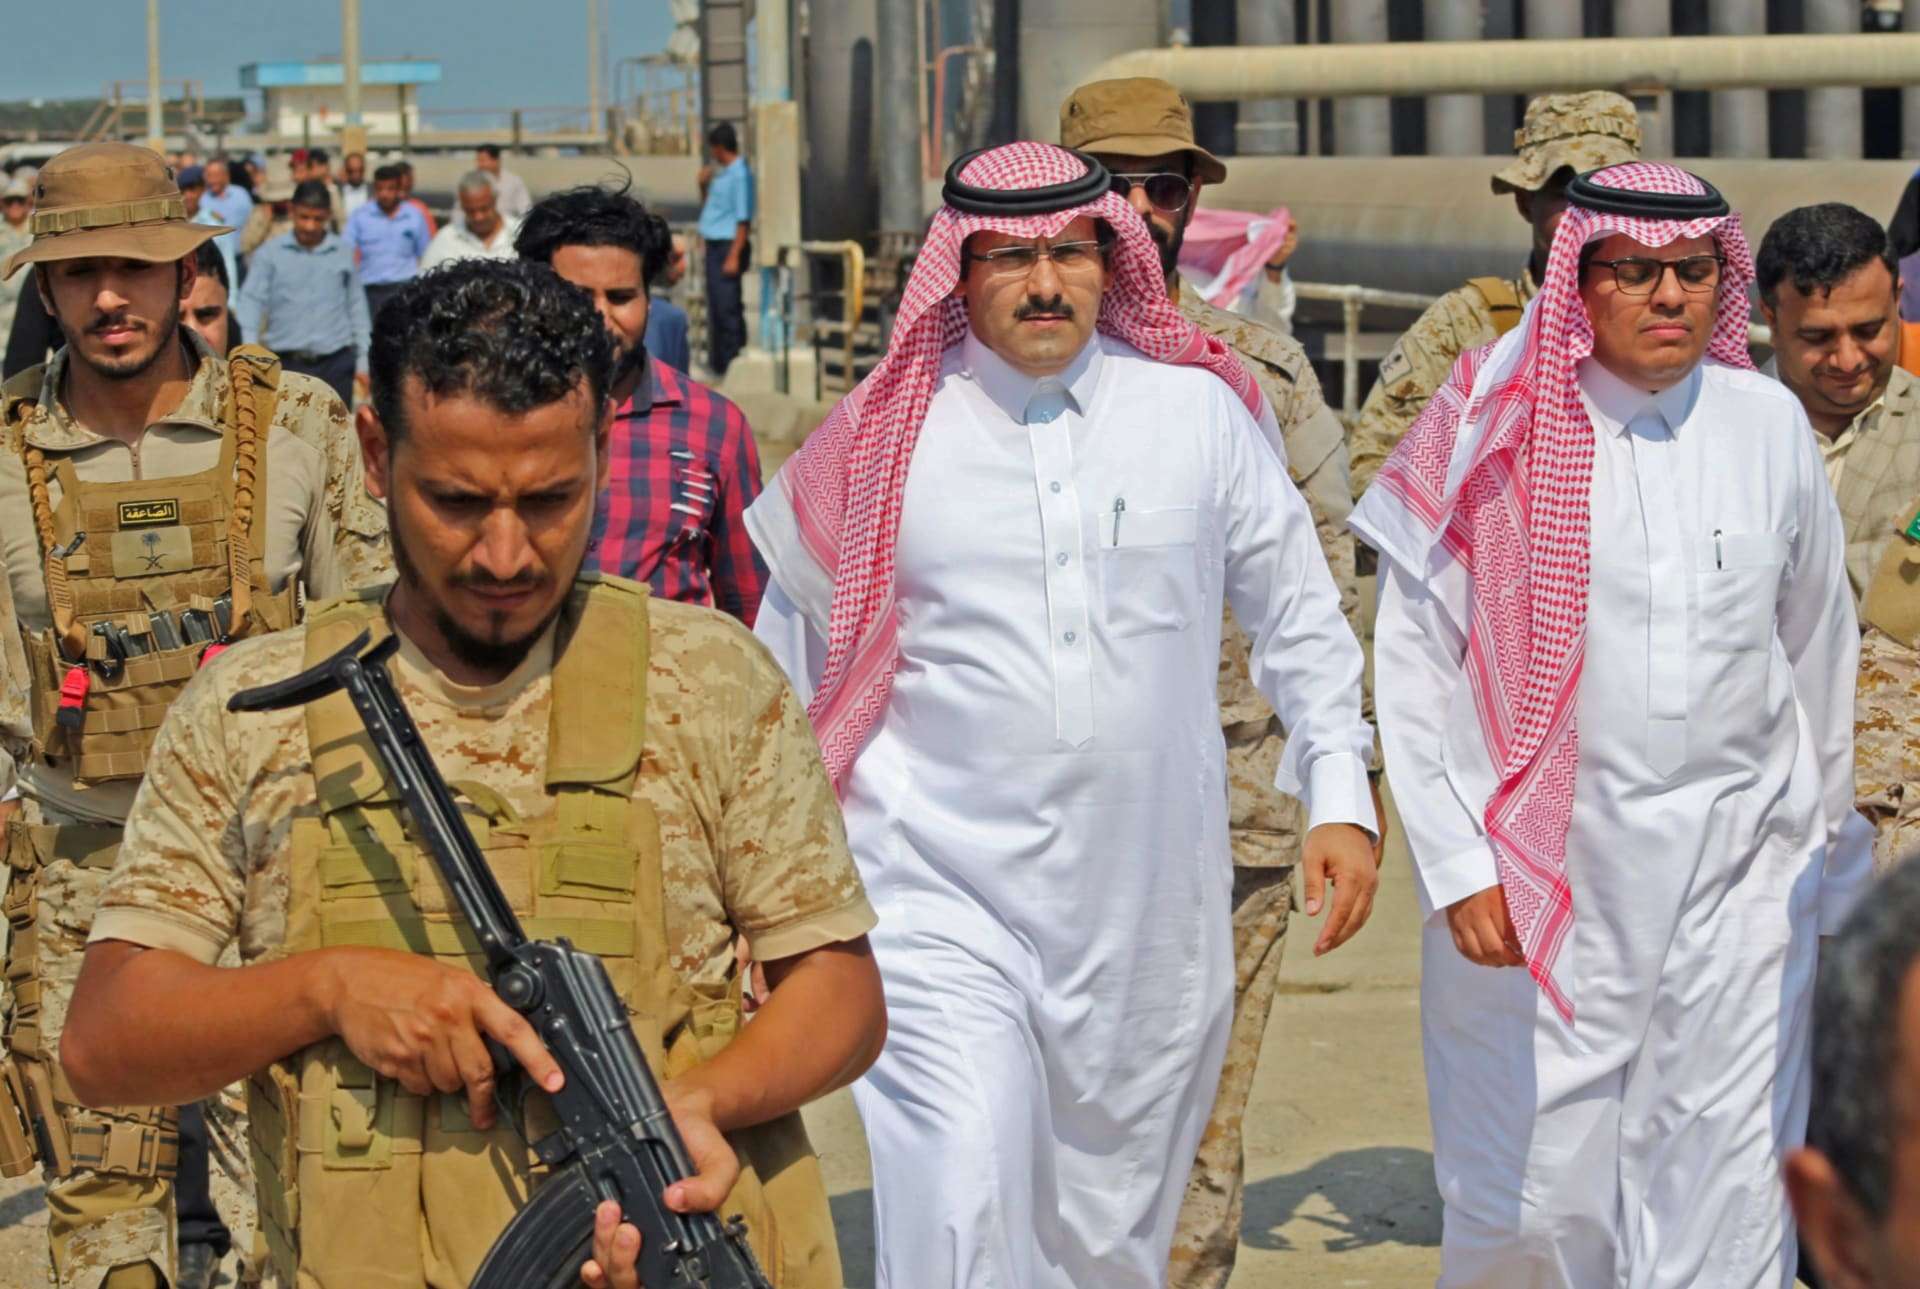 مقربة من السفير السعودي تفتح النار على وزير يمني وتصفه بهذا الأمر (غير متوقع)